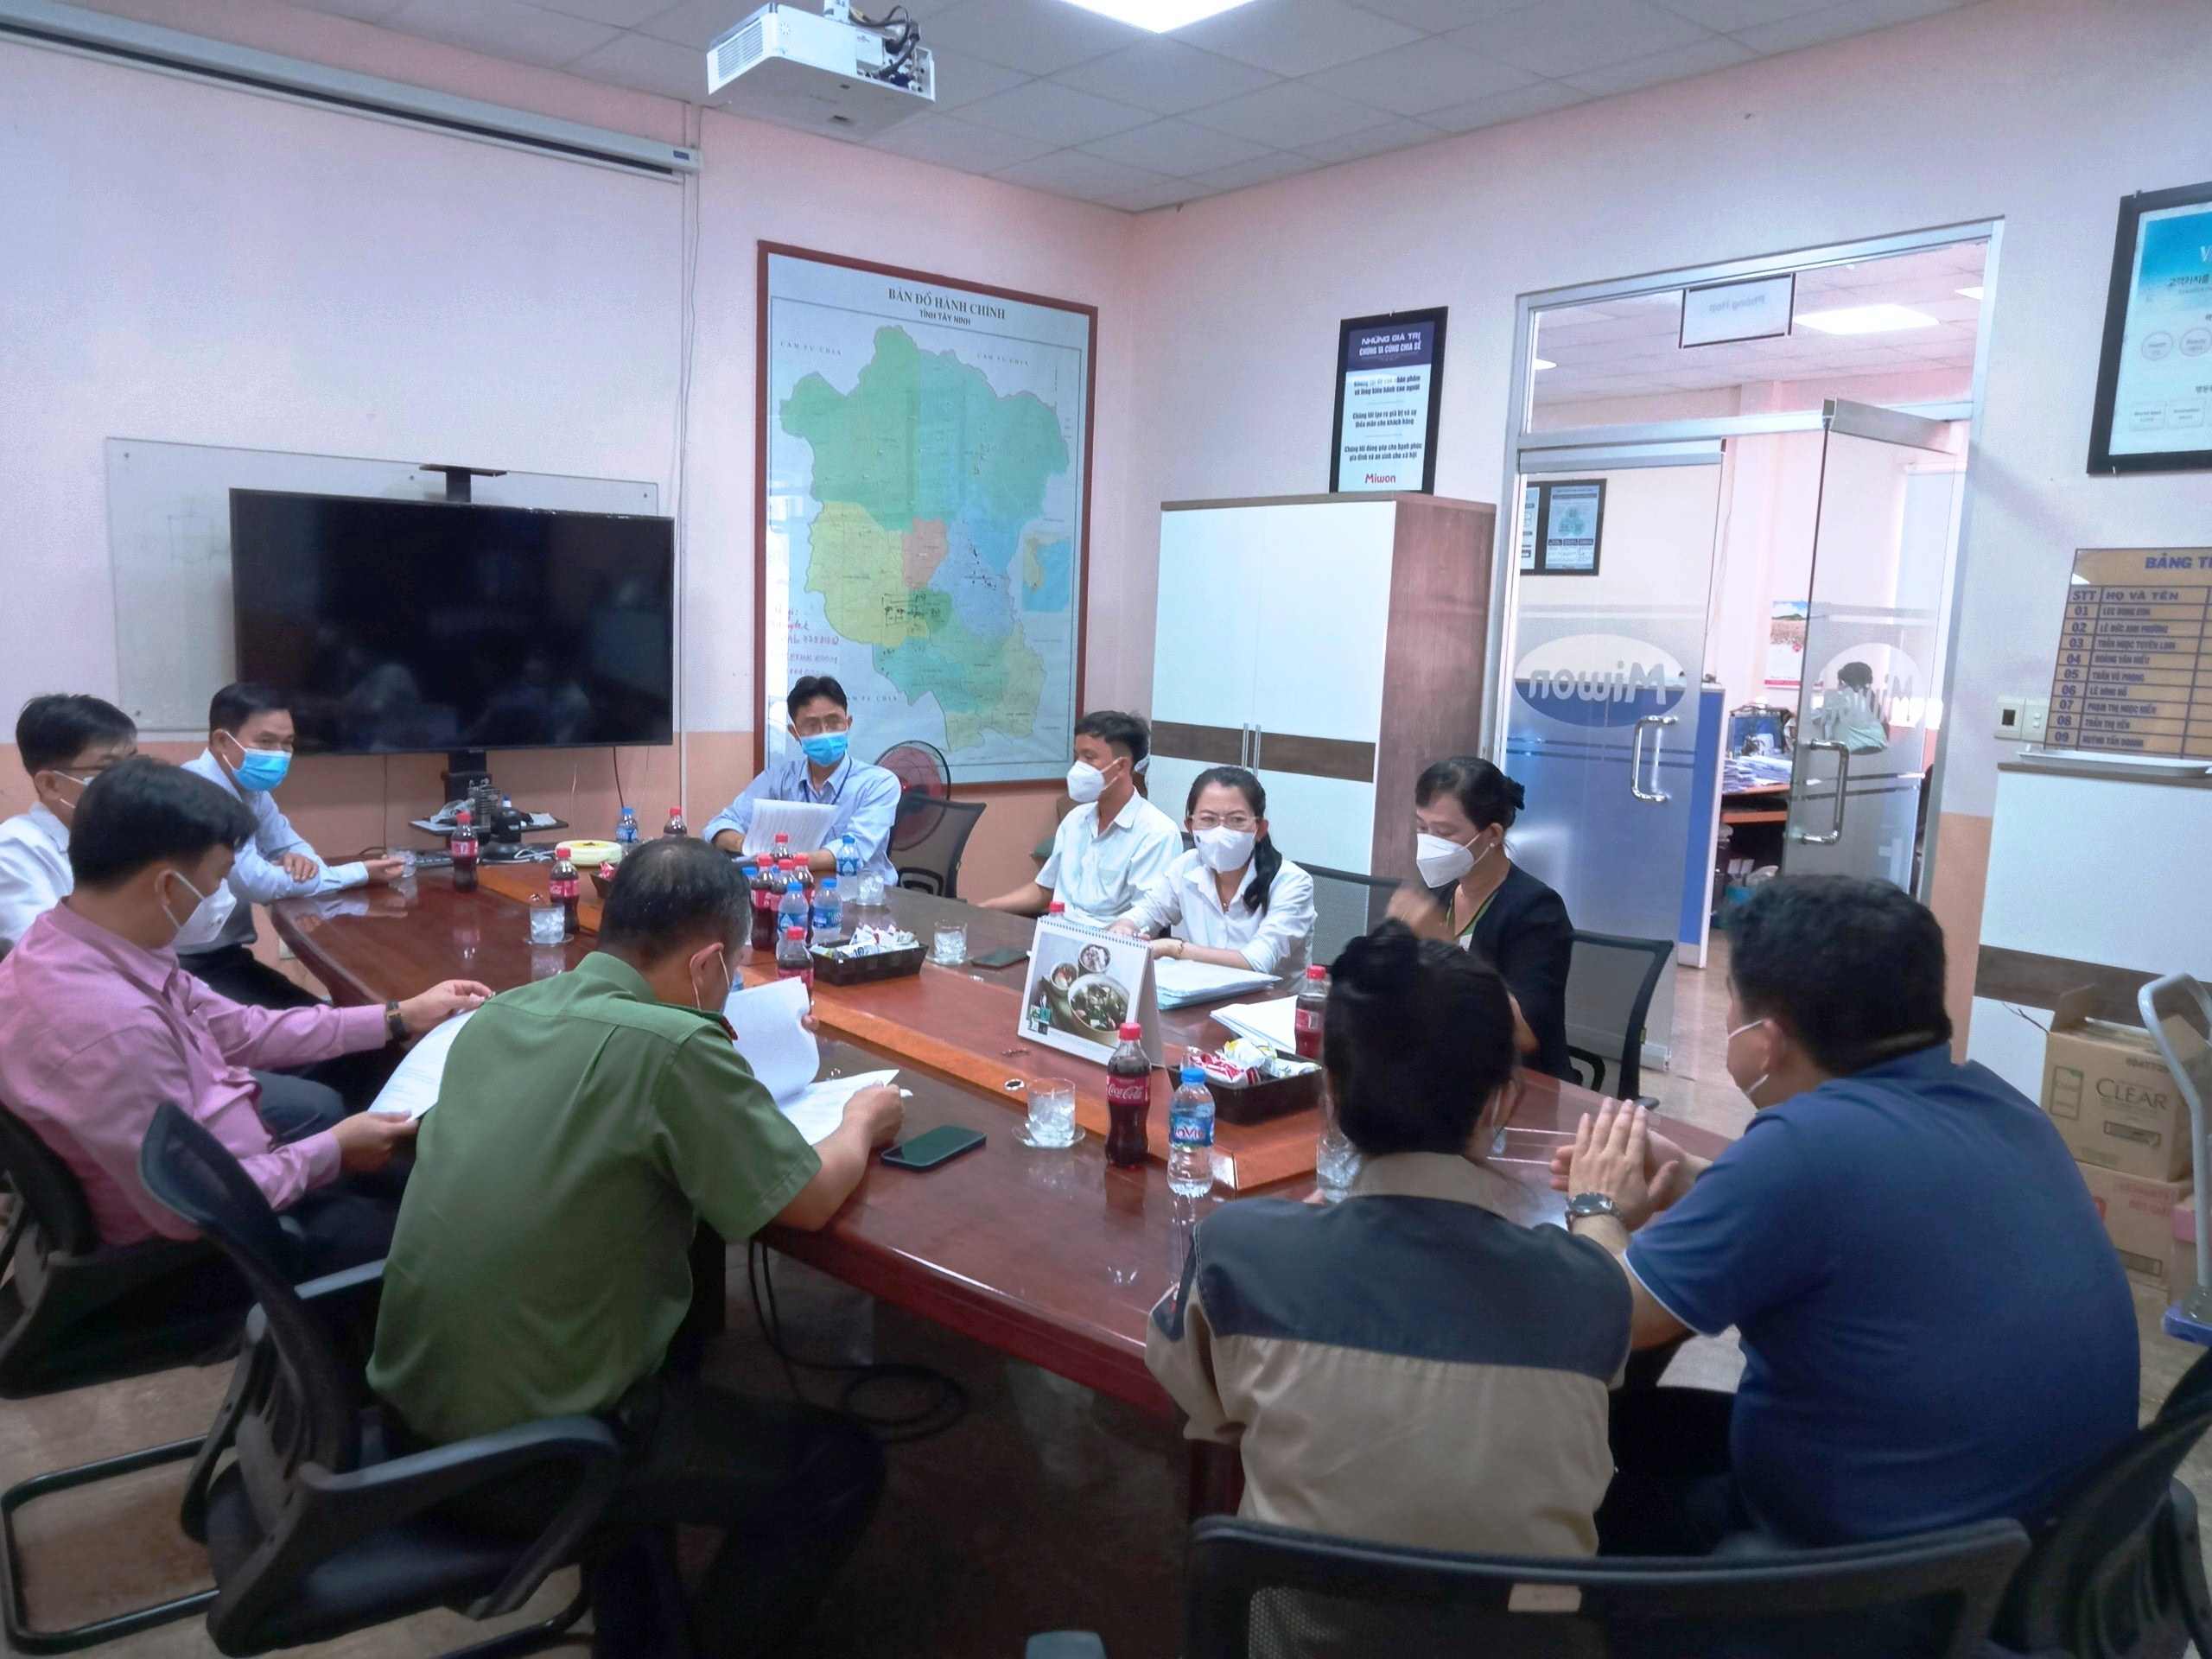 Huyện Dương Minh Châu: Kiểm tra, thẩm định phương án khôi phục sản xuất của doanh nghiệp